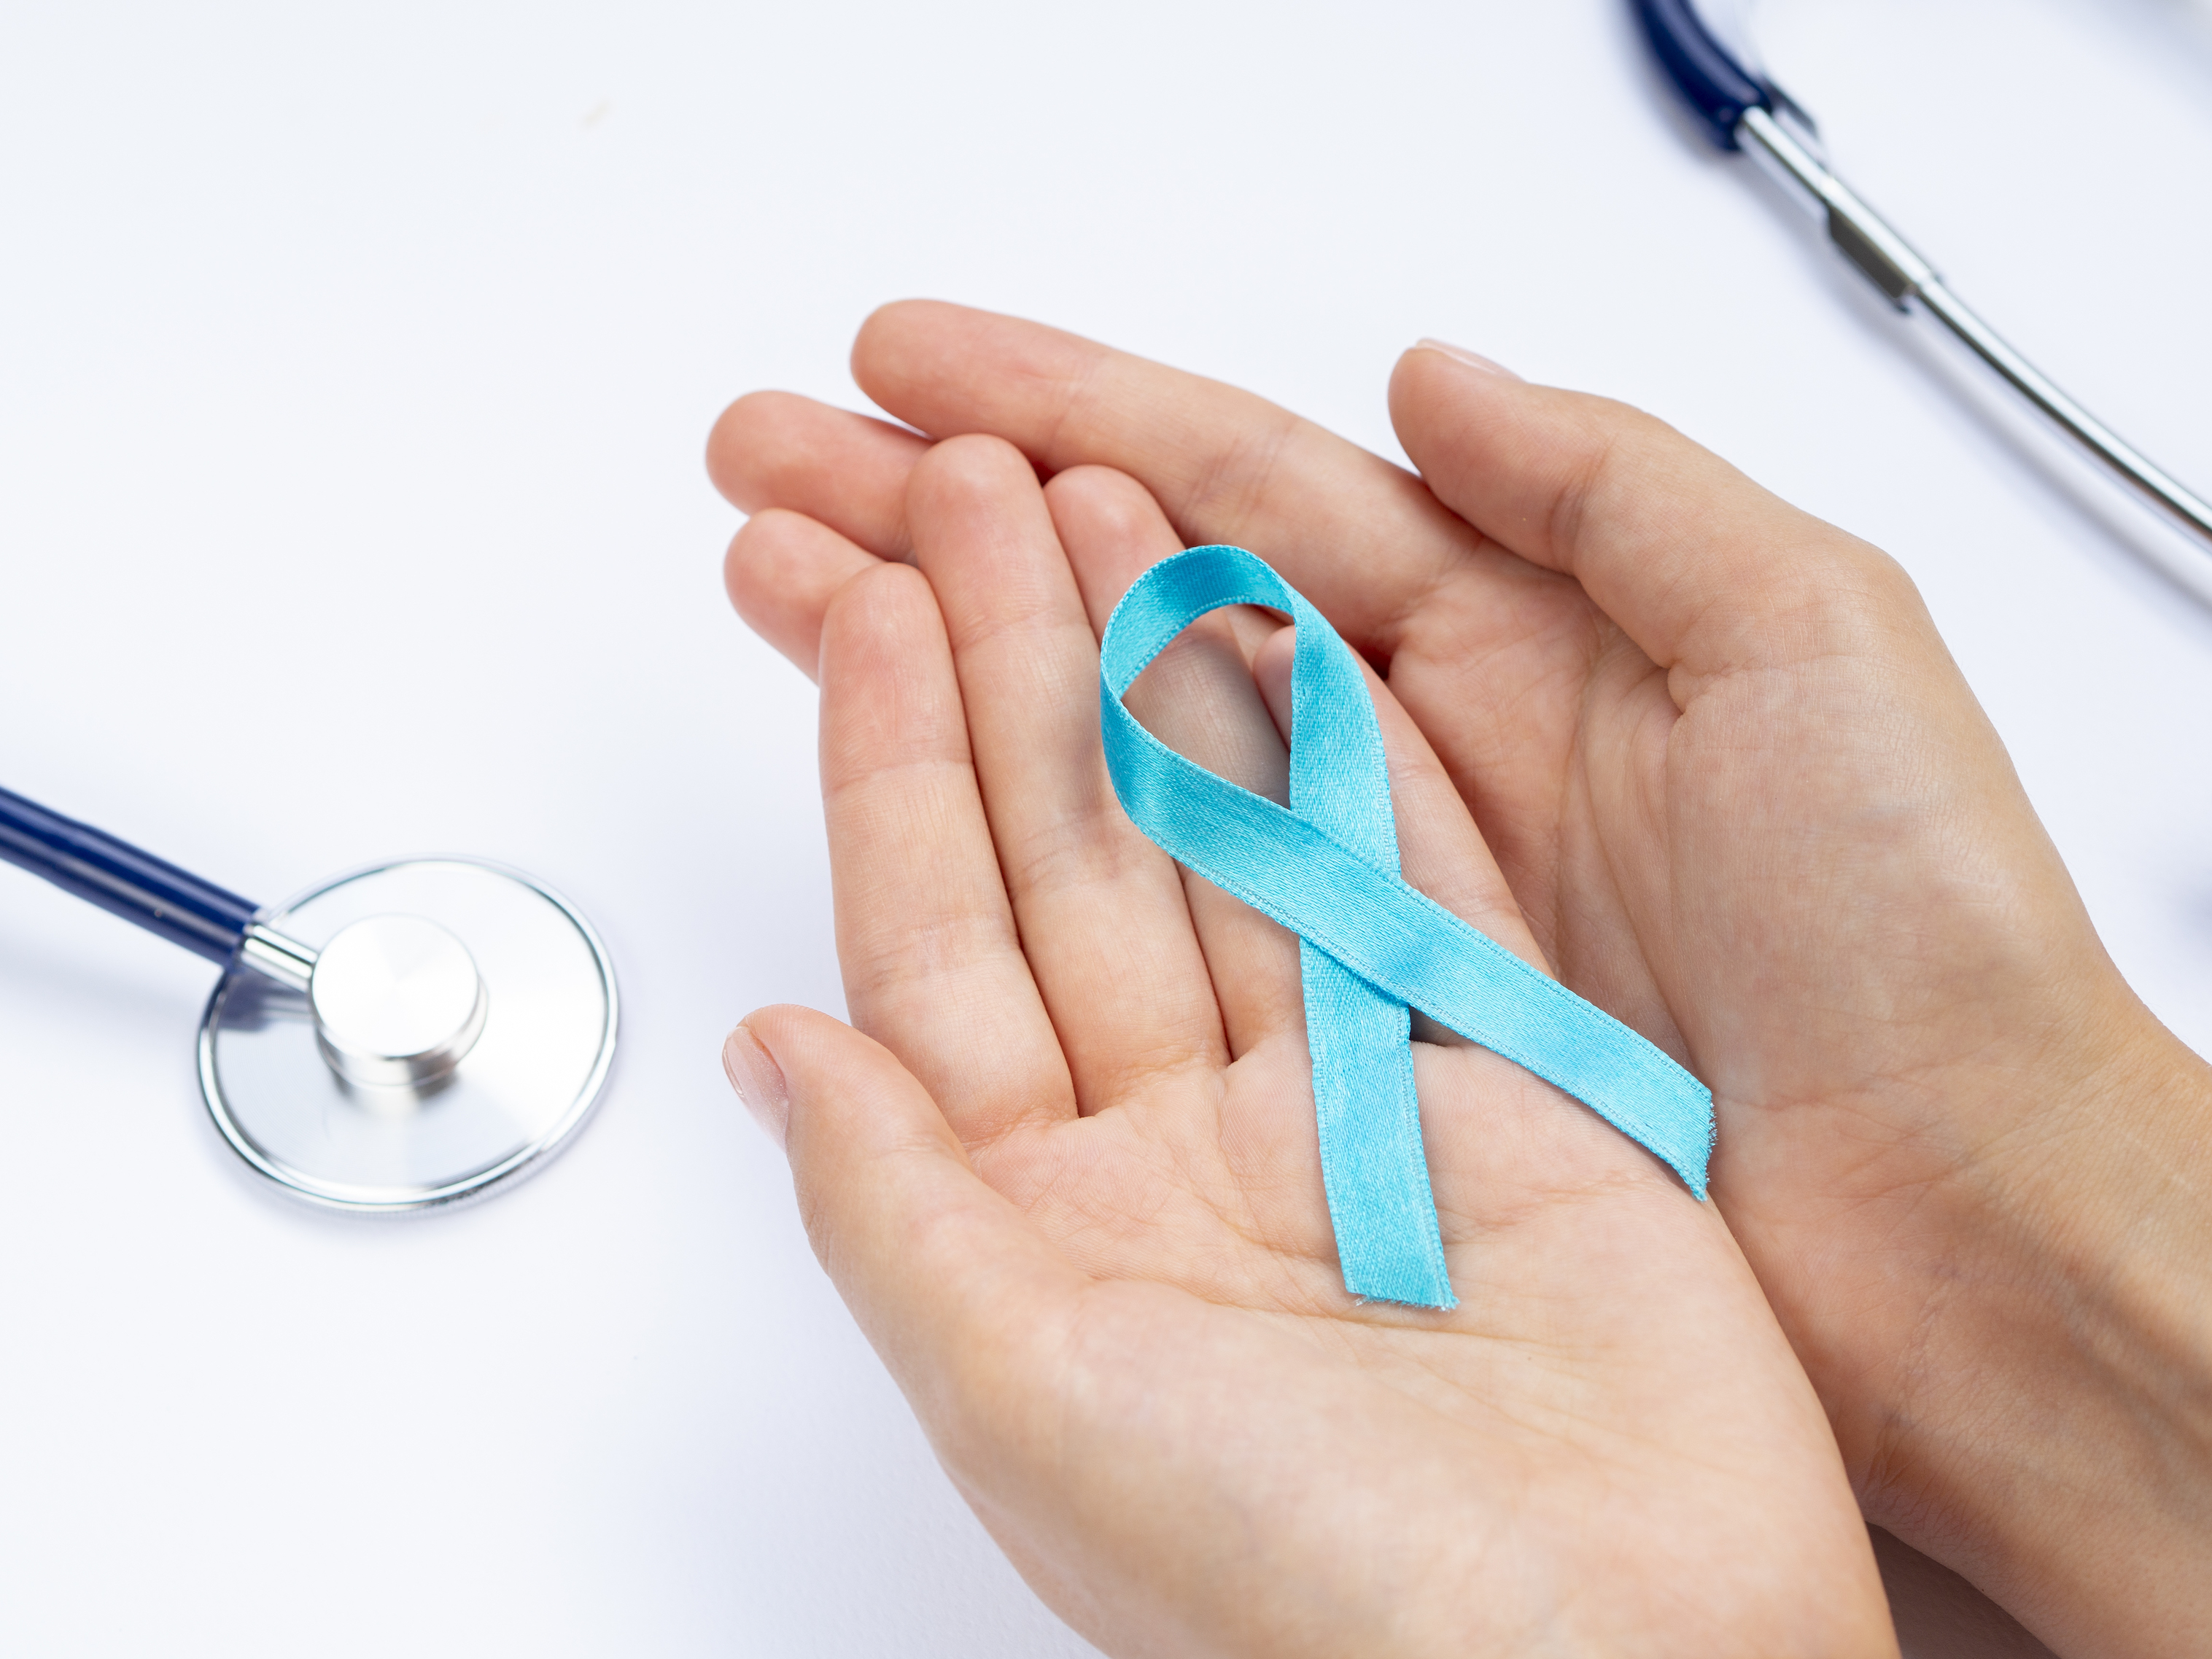 DÍA DE LA CANCEROLOGÍA PERUANA: FOMENTA LA IMPORTANCIA DE LOS CHEQUEOS PREVENTIVOS Y EL DIAGNÓSTICO PRECOZ DEL CÁNCER